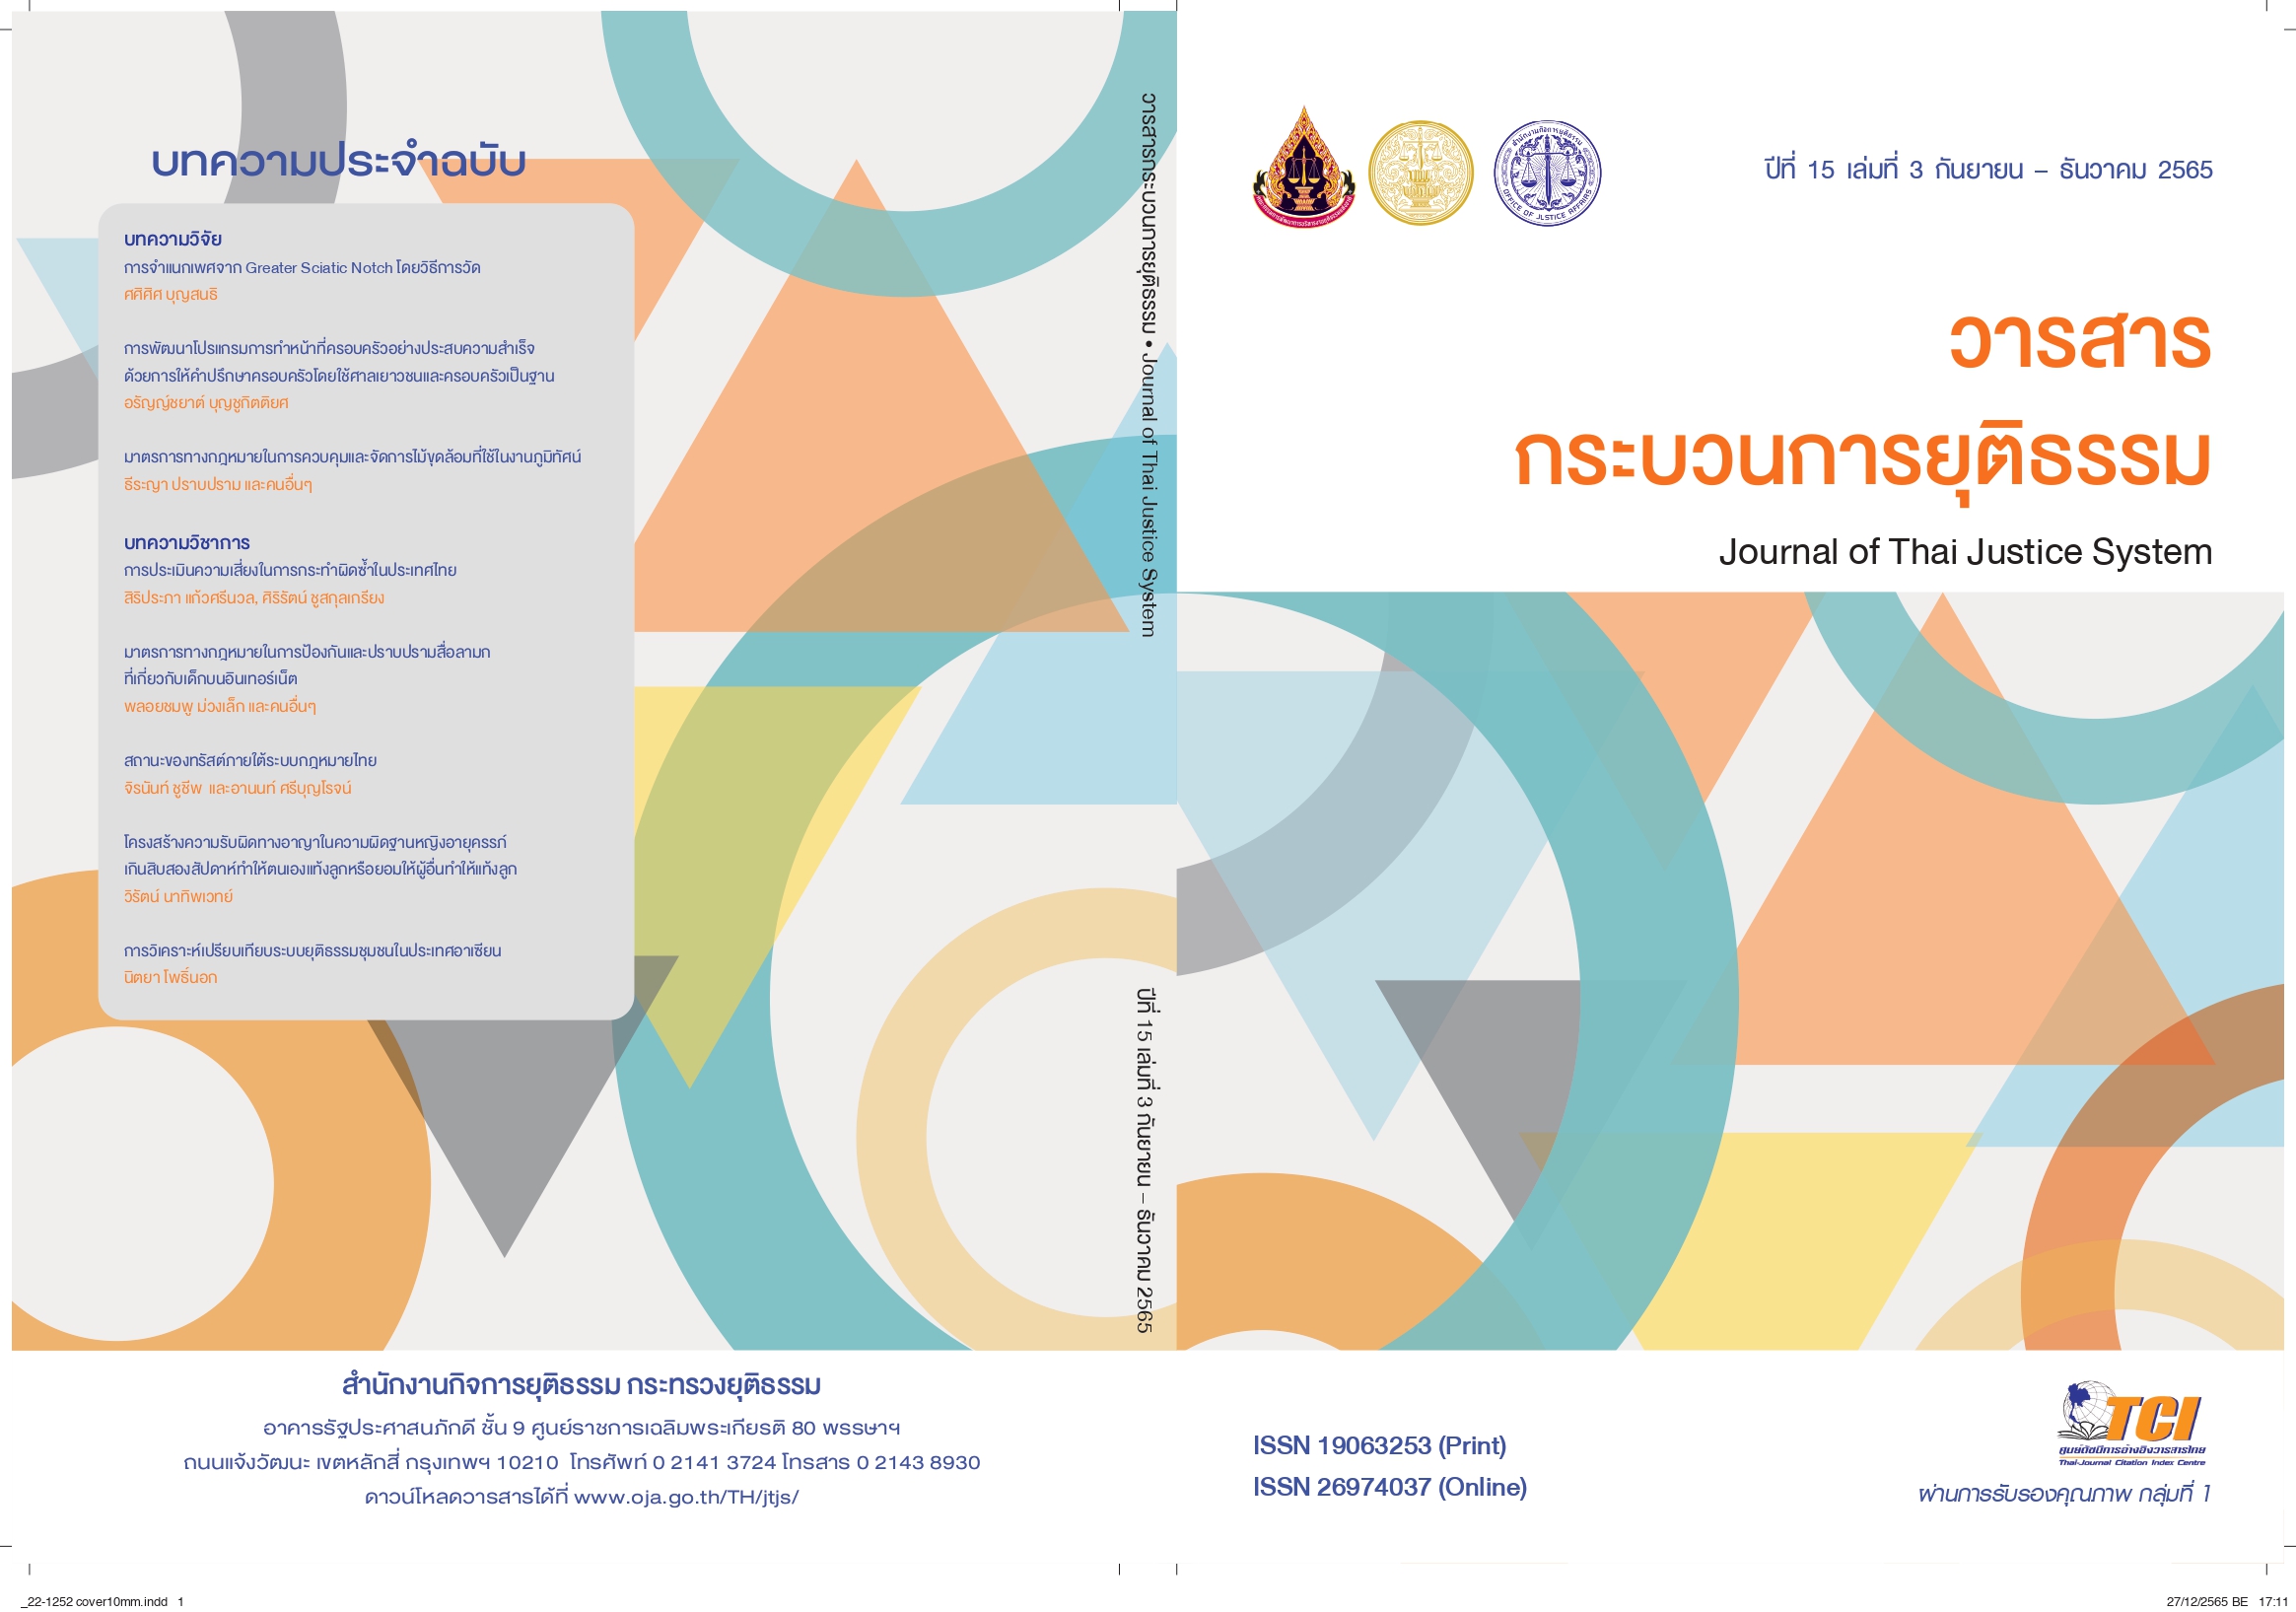   วารสารกระบวนการยุติธรรม (Journal of Thai Justice System)